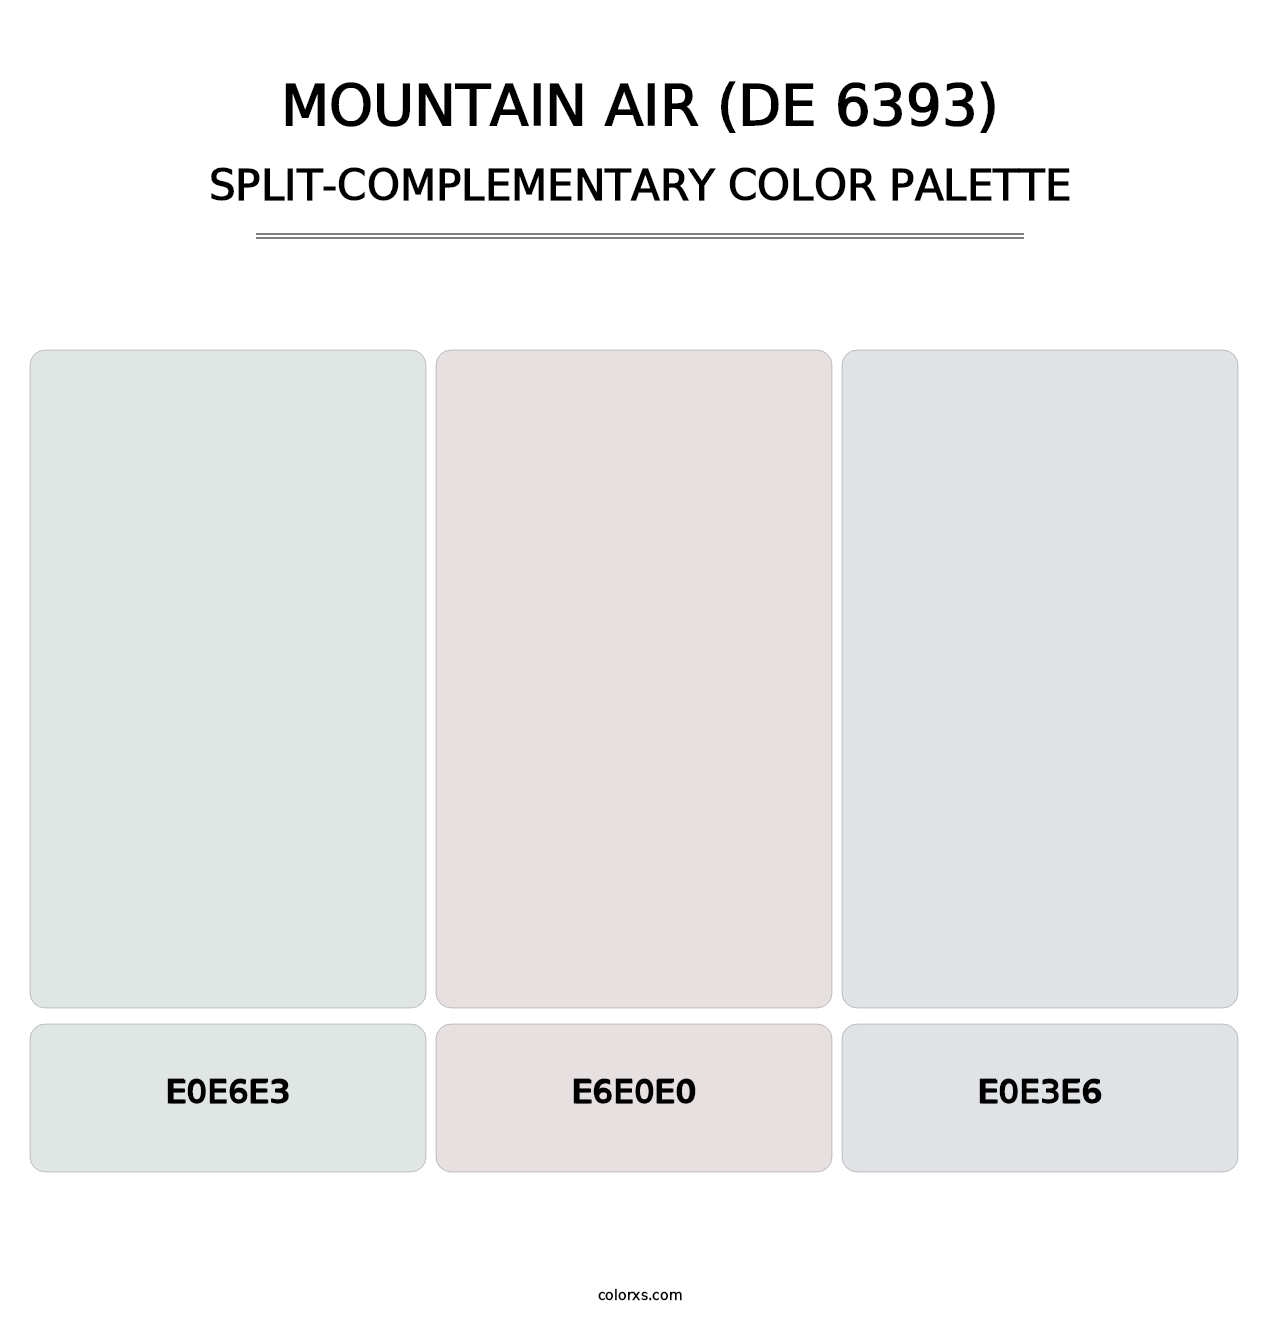 Mountain Air (DE 6393) - Split-Complementary Color Palette